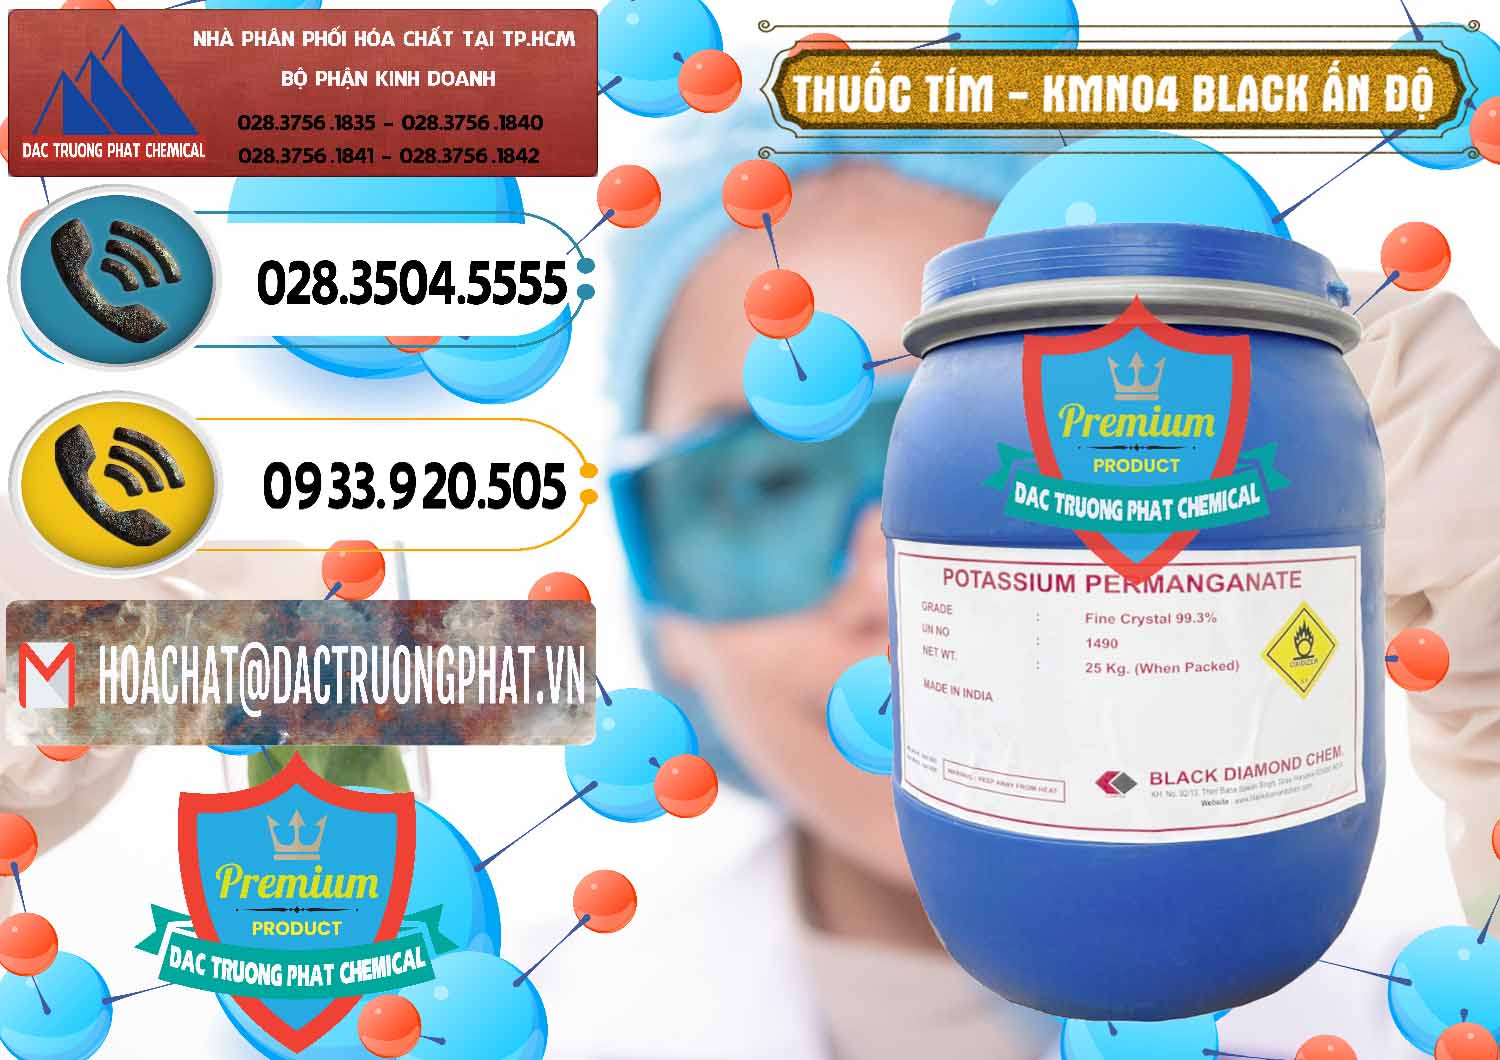 Nơi chuyên bán và phân phối Thuốc Tím - KMNO4 Black Diamond Ấn Độ India - 0414 - Phân phối _ cung cấp hóa chất tại TP.HCM - hoachatdetnhuom.vn